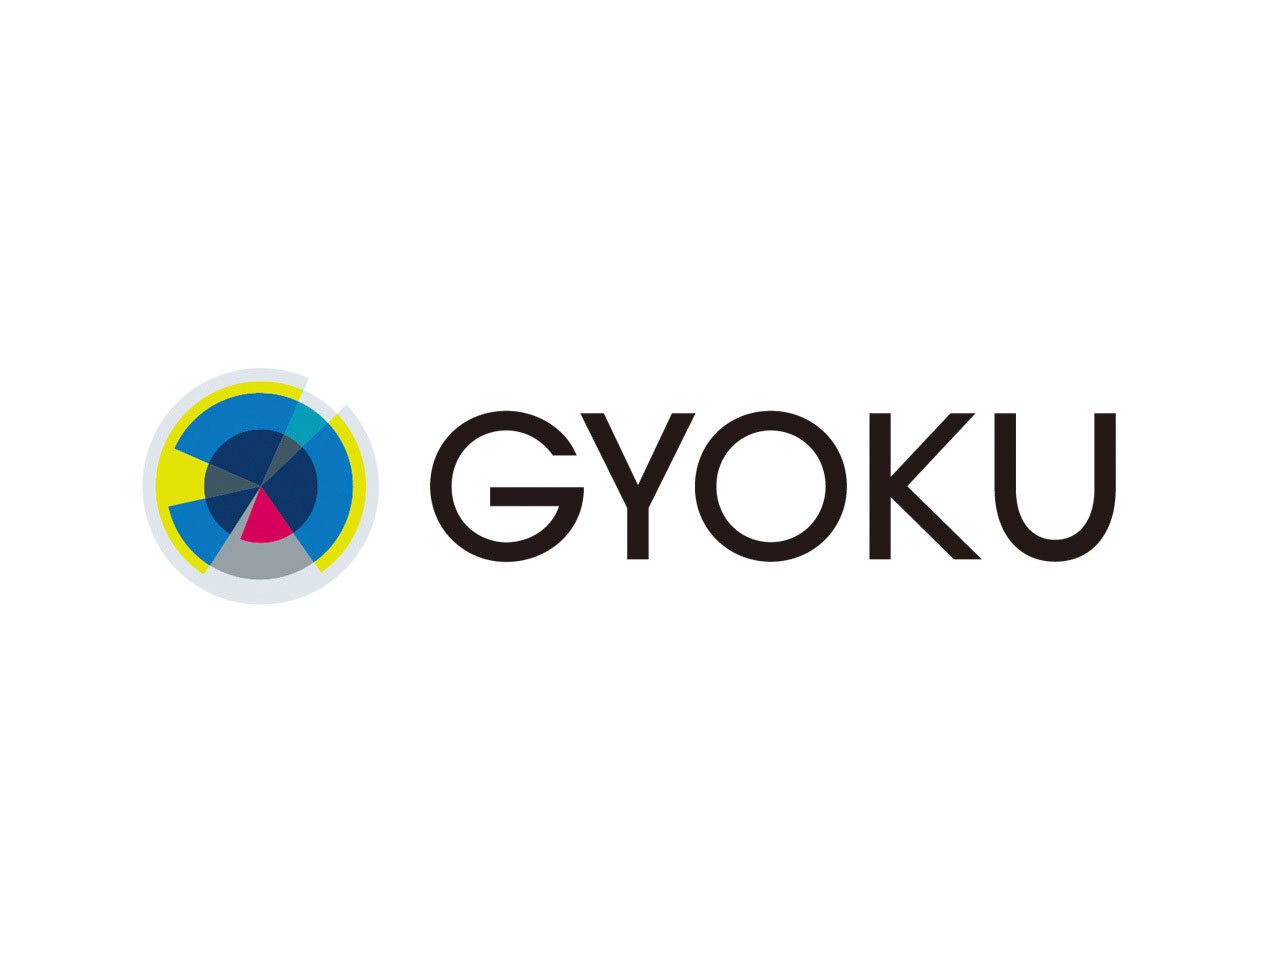 GYOKUは、“沖縄クリエイティブを拡張する”というビジョンを掲げるデジタルクリエイティブカンパニー。2019年4月の創業以来、バナー広告の制作を中心に、国内広告業界最大手のベストパートナーとしてポジションを確立。